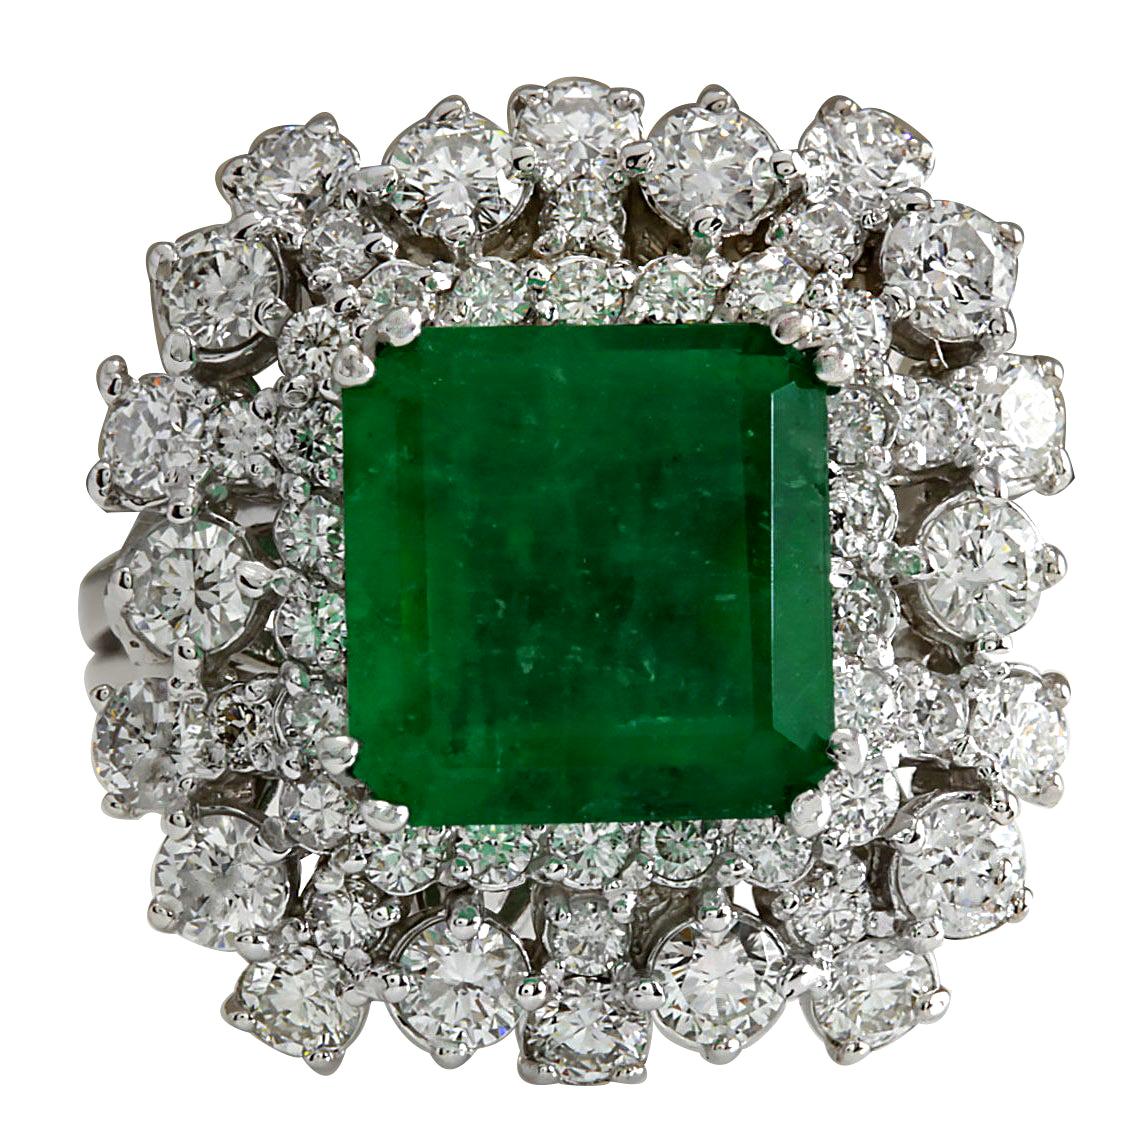 Exquisiter natürlicher Smaragd-Diamantring aus 14 Karat Weißgold 